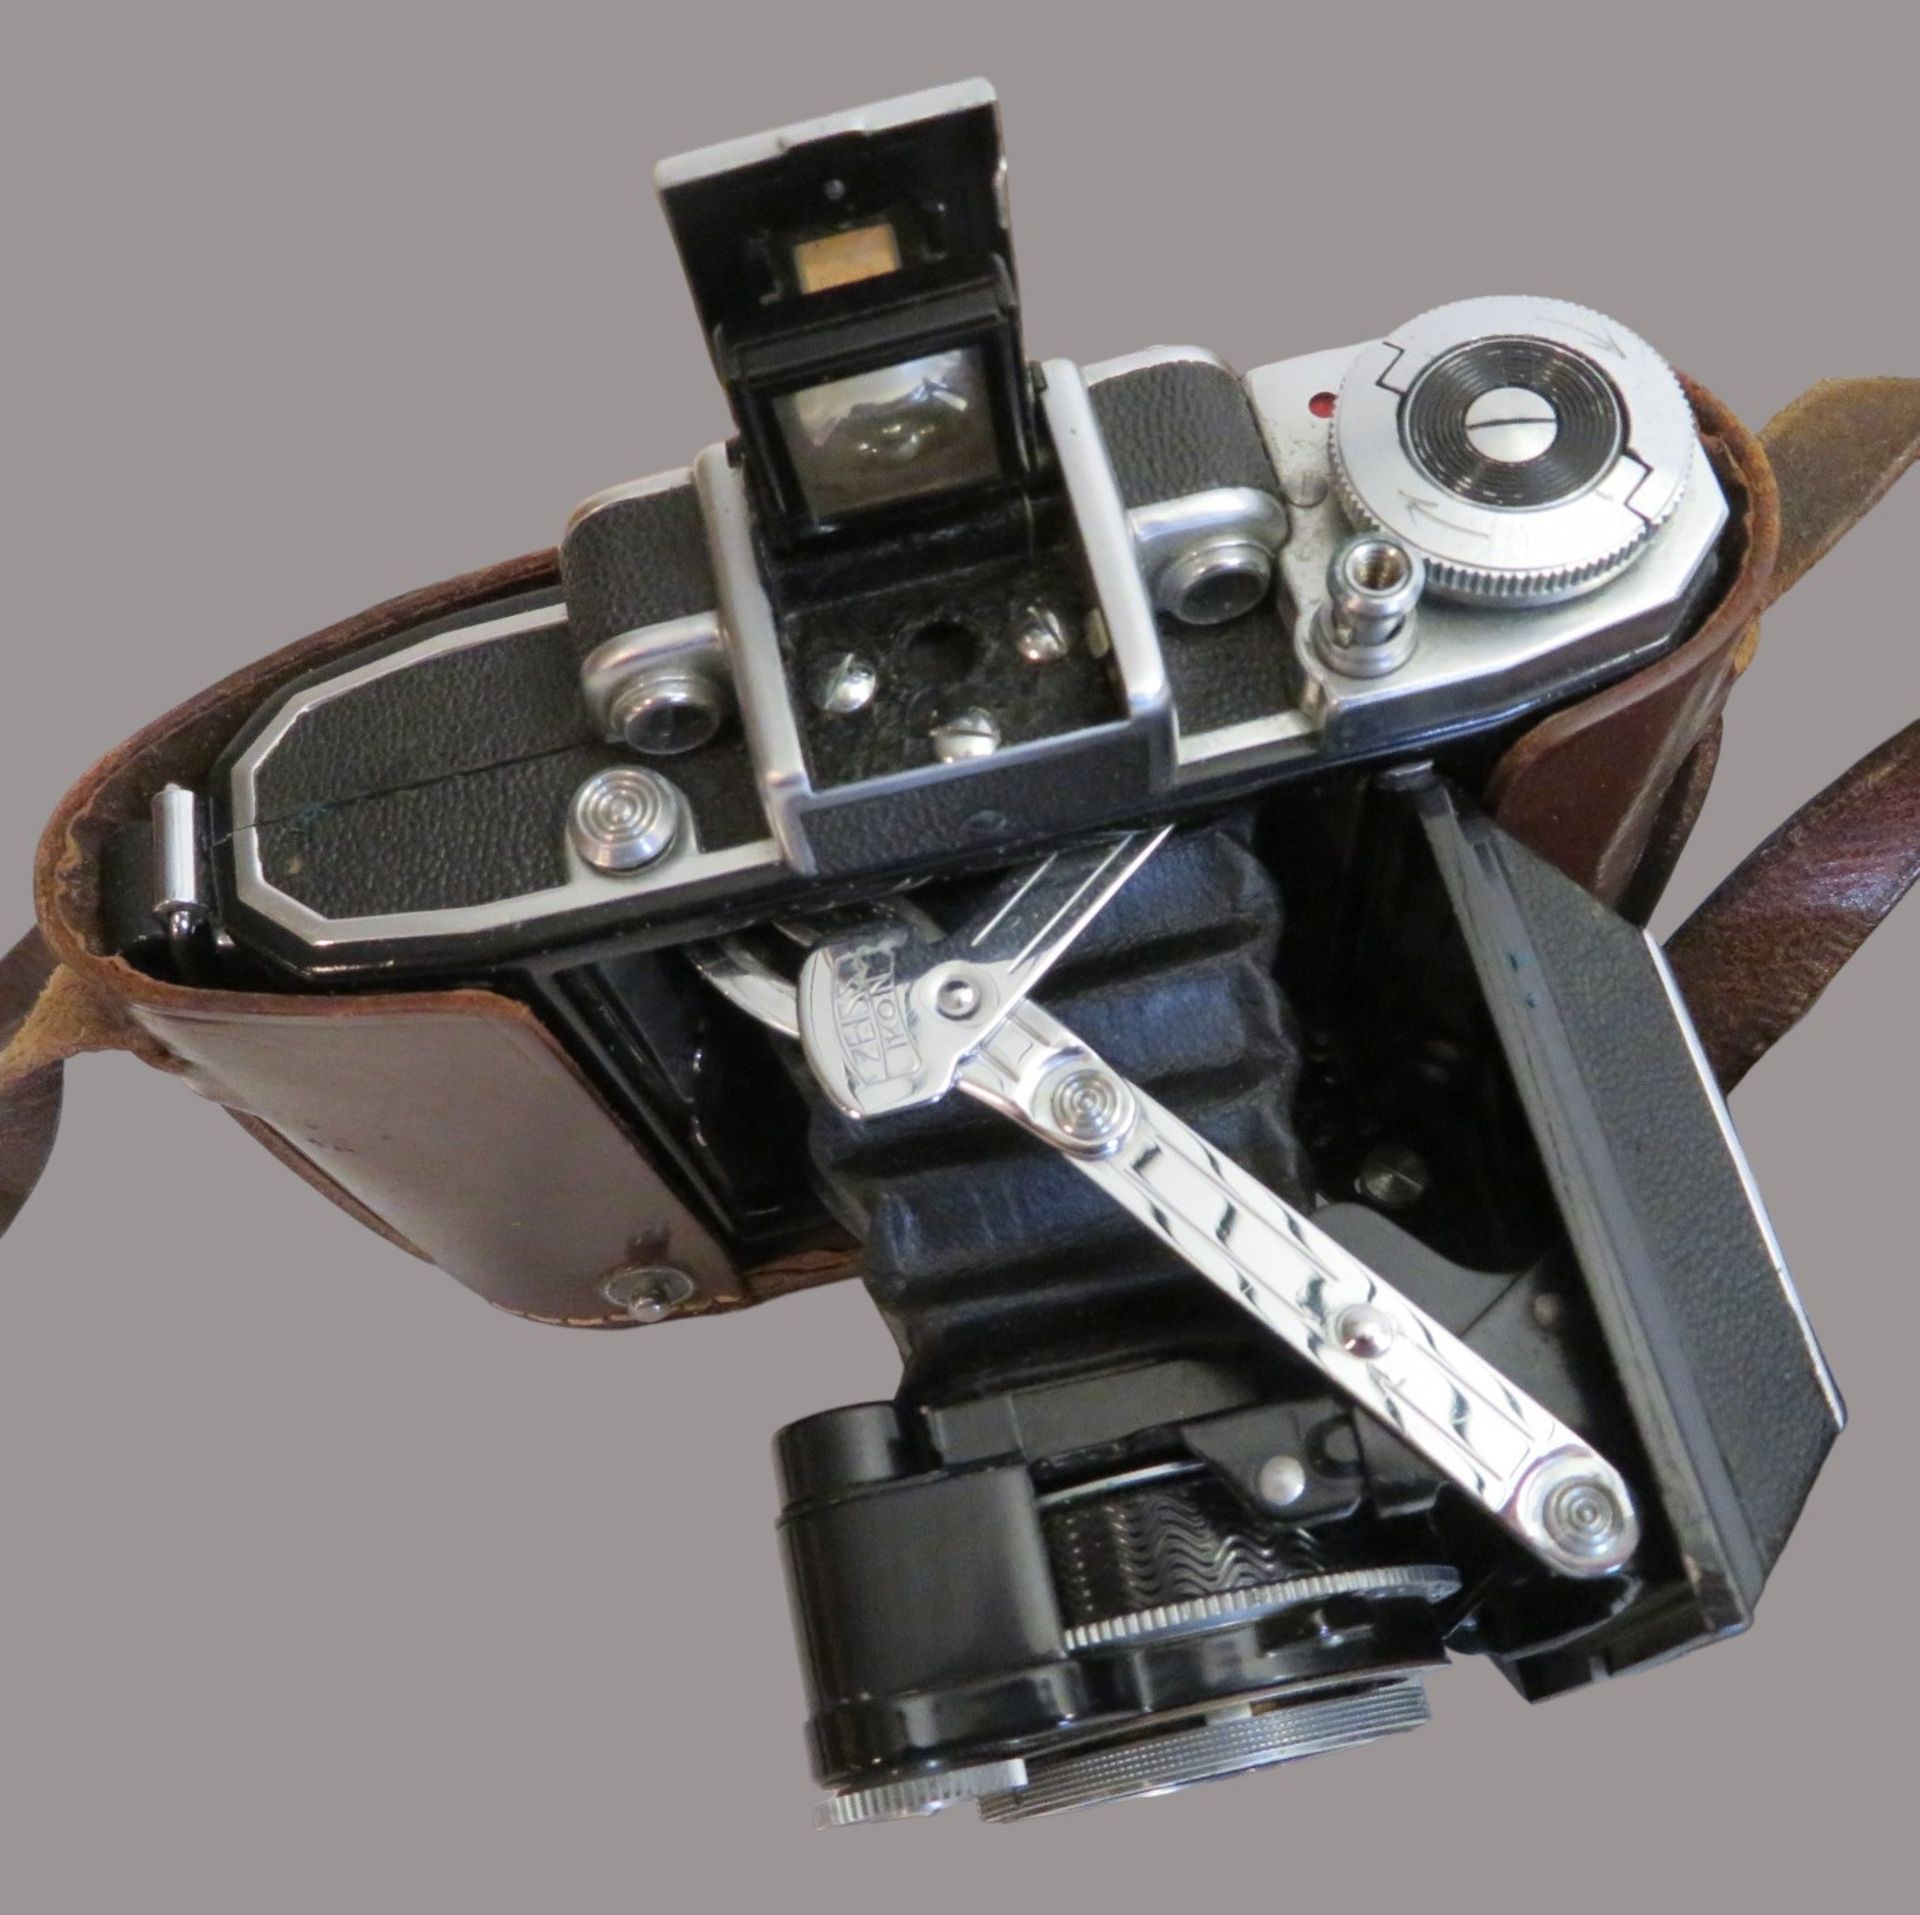 Kamera, Rolleiflex, Franke & Heidecke Braunschweig, Lederfutteral, Gebrauchsspuren, 15 x 10 x 11 cm - Image 2 of 2